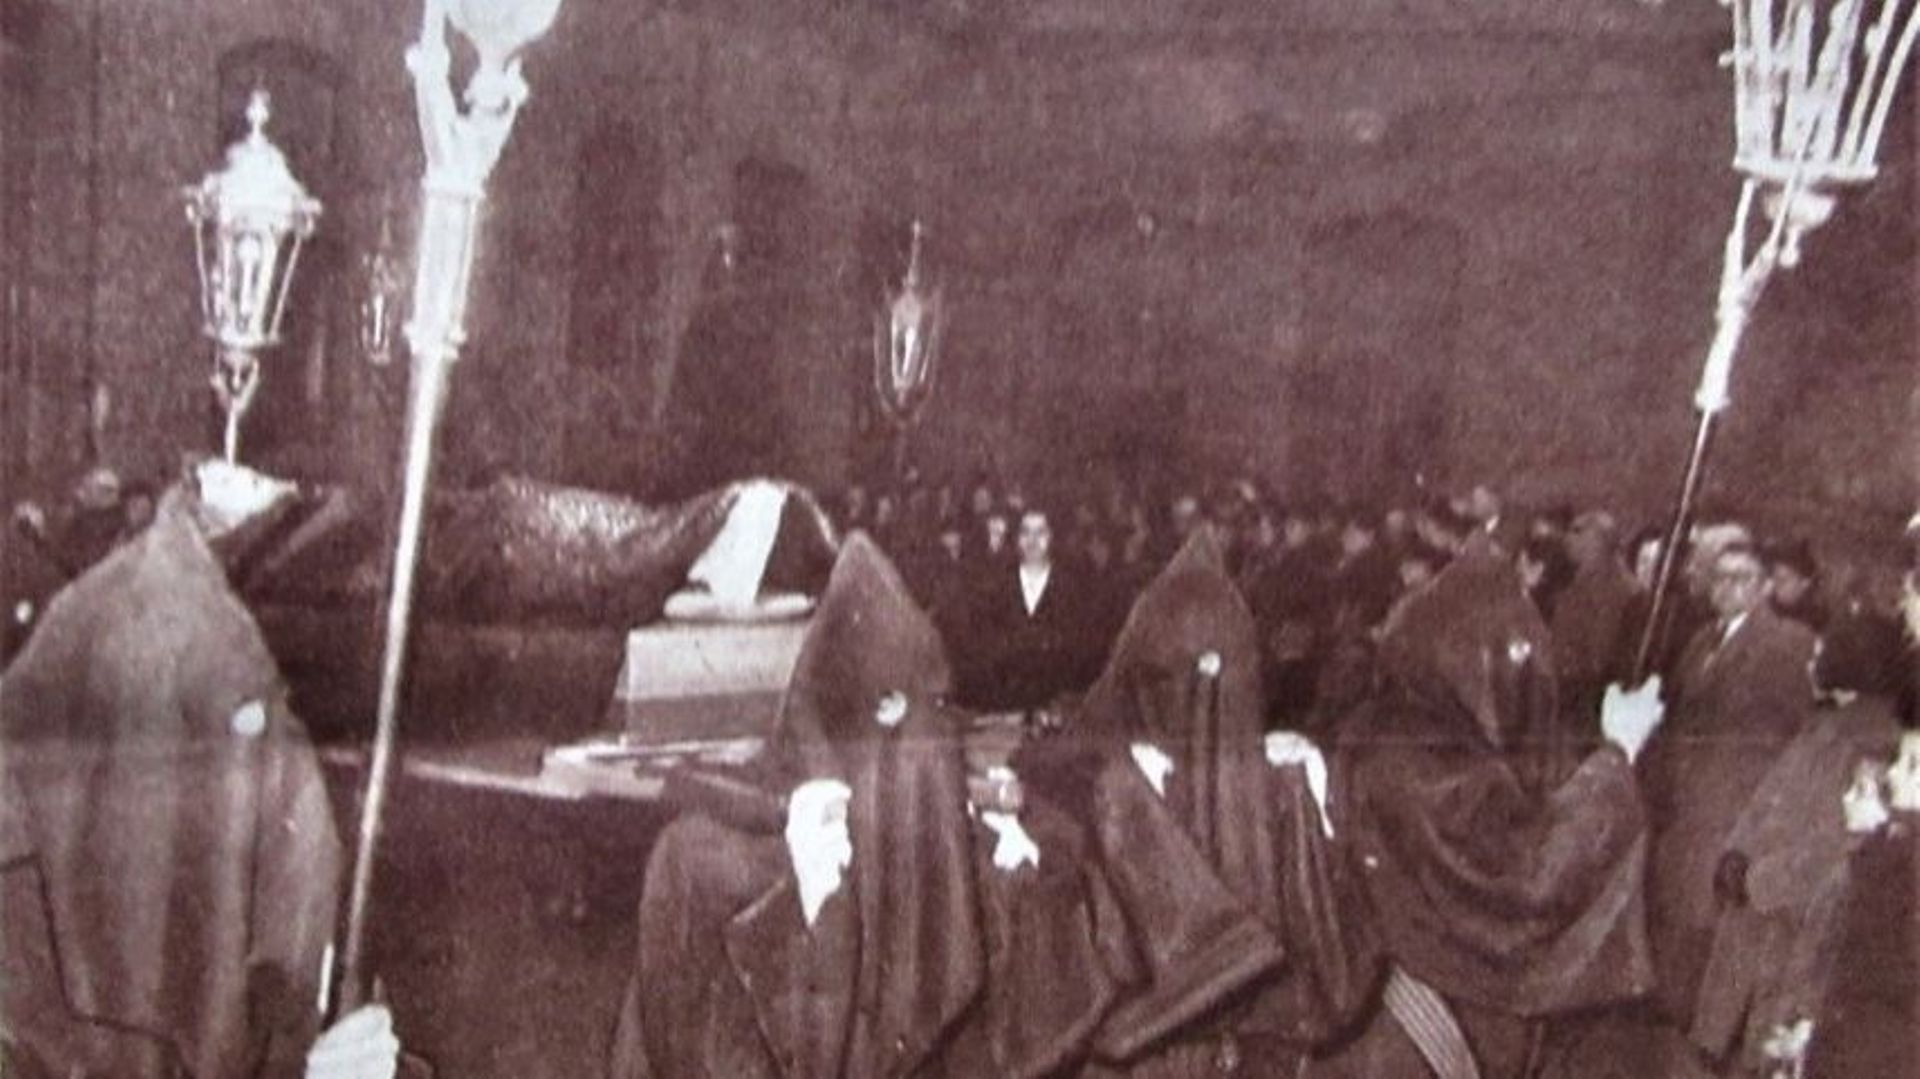 11 avril 1952 : la procession quitte la cour de l’église provisoire pour entamer son périple – Extrait du Patriote Illustré du 20 avril 1952